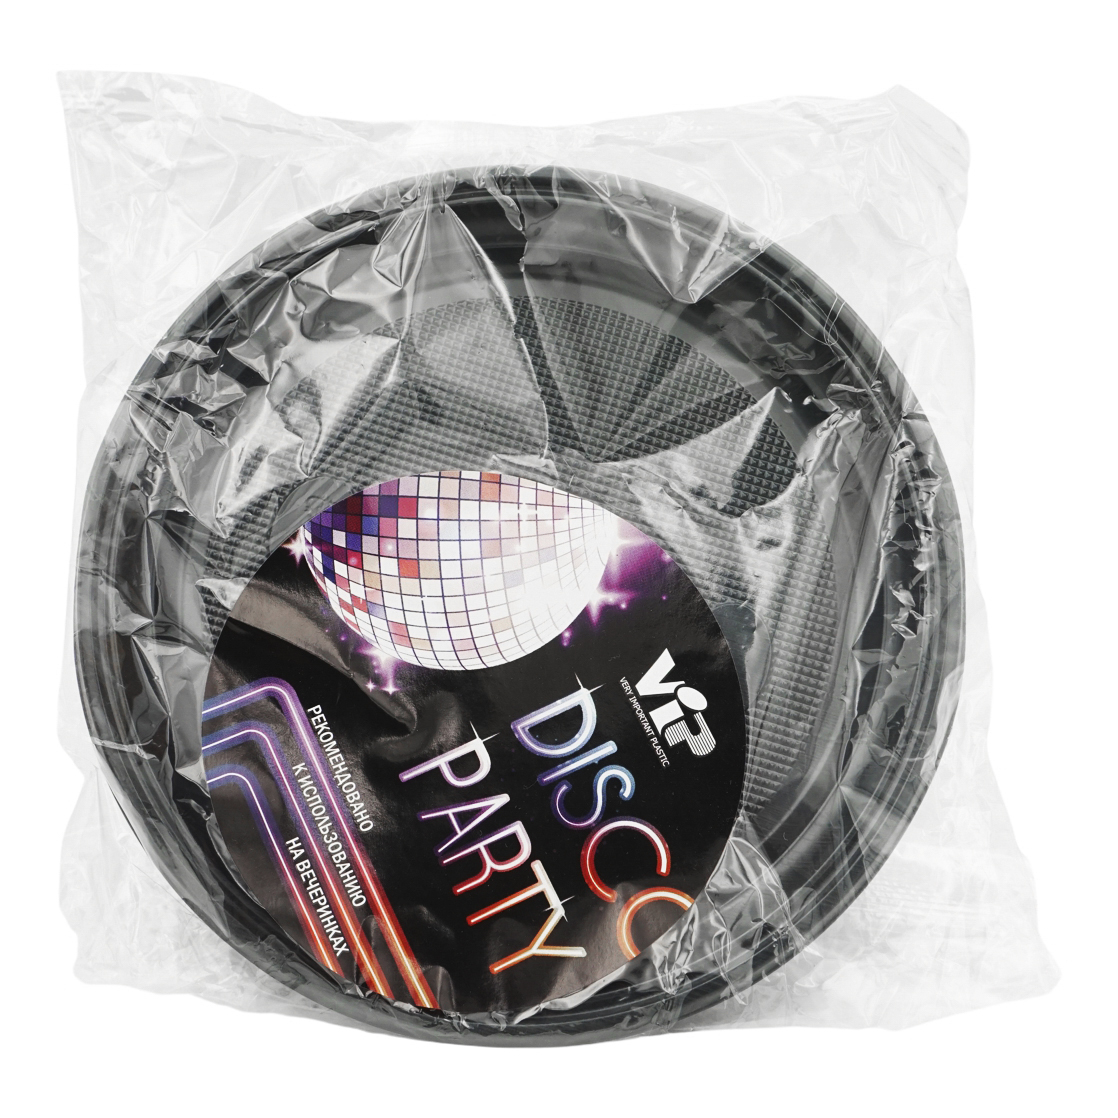 Тарелки одноразовые Vip Disco Party пластиковые черные 205 мм х 6 шт